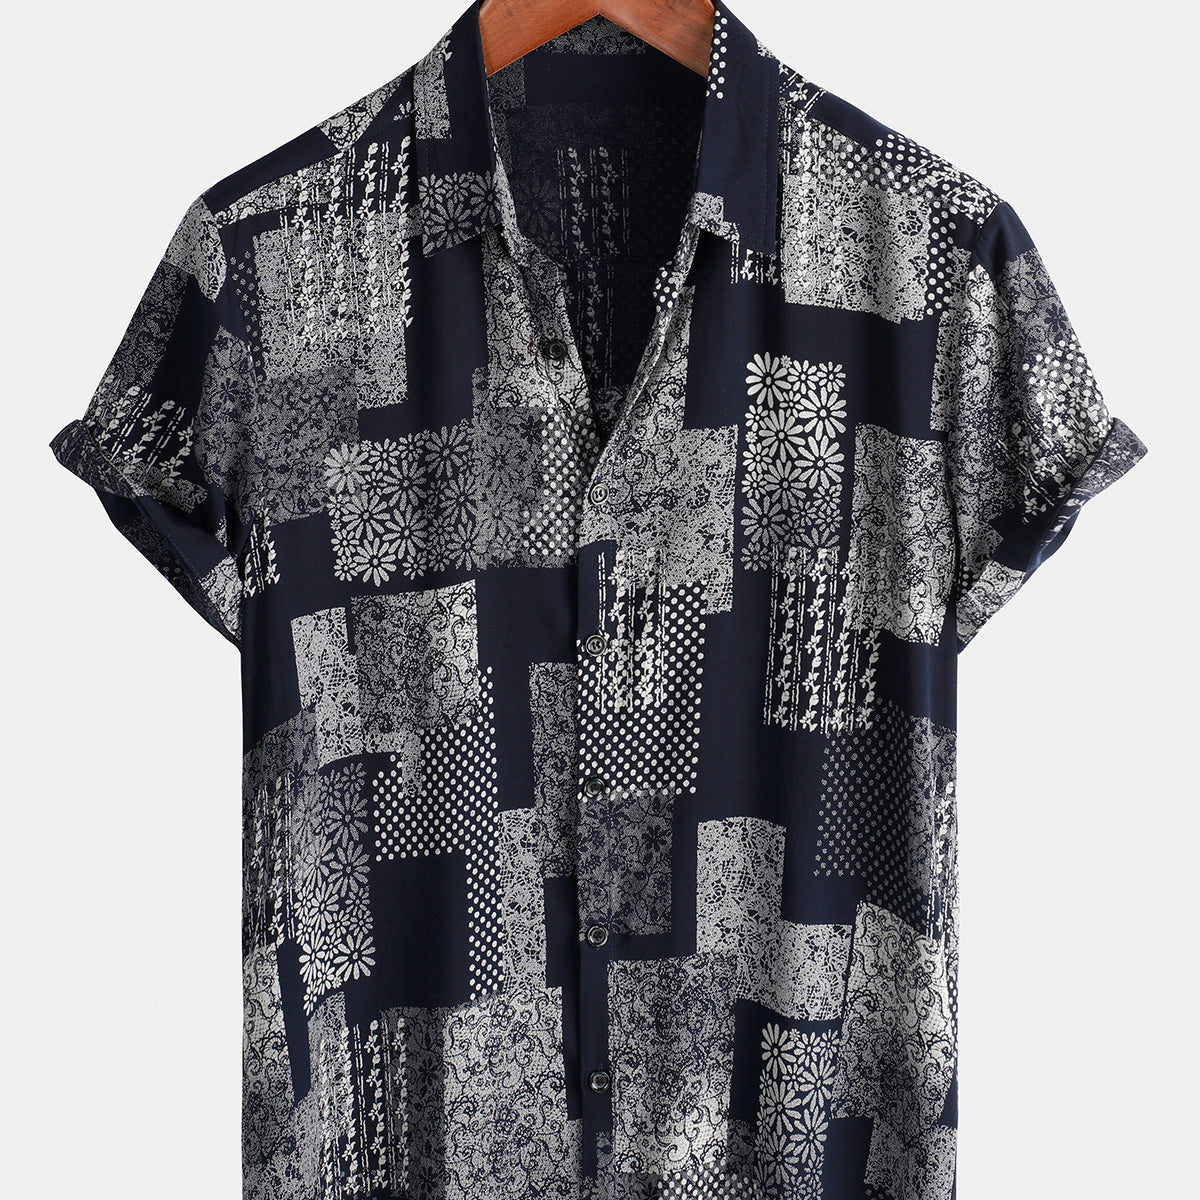 Chemise boutonnée à manches courtes pour homme Patchwork imprimé marguerite florale vintage rétro vacances